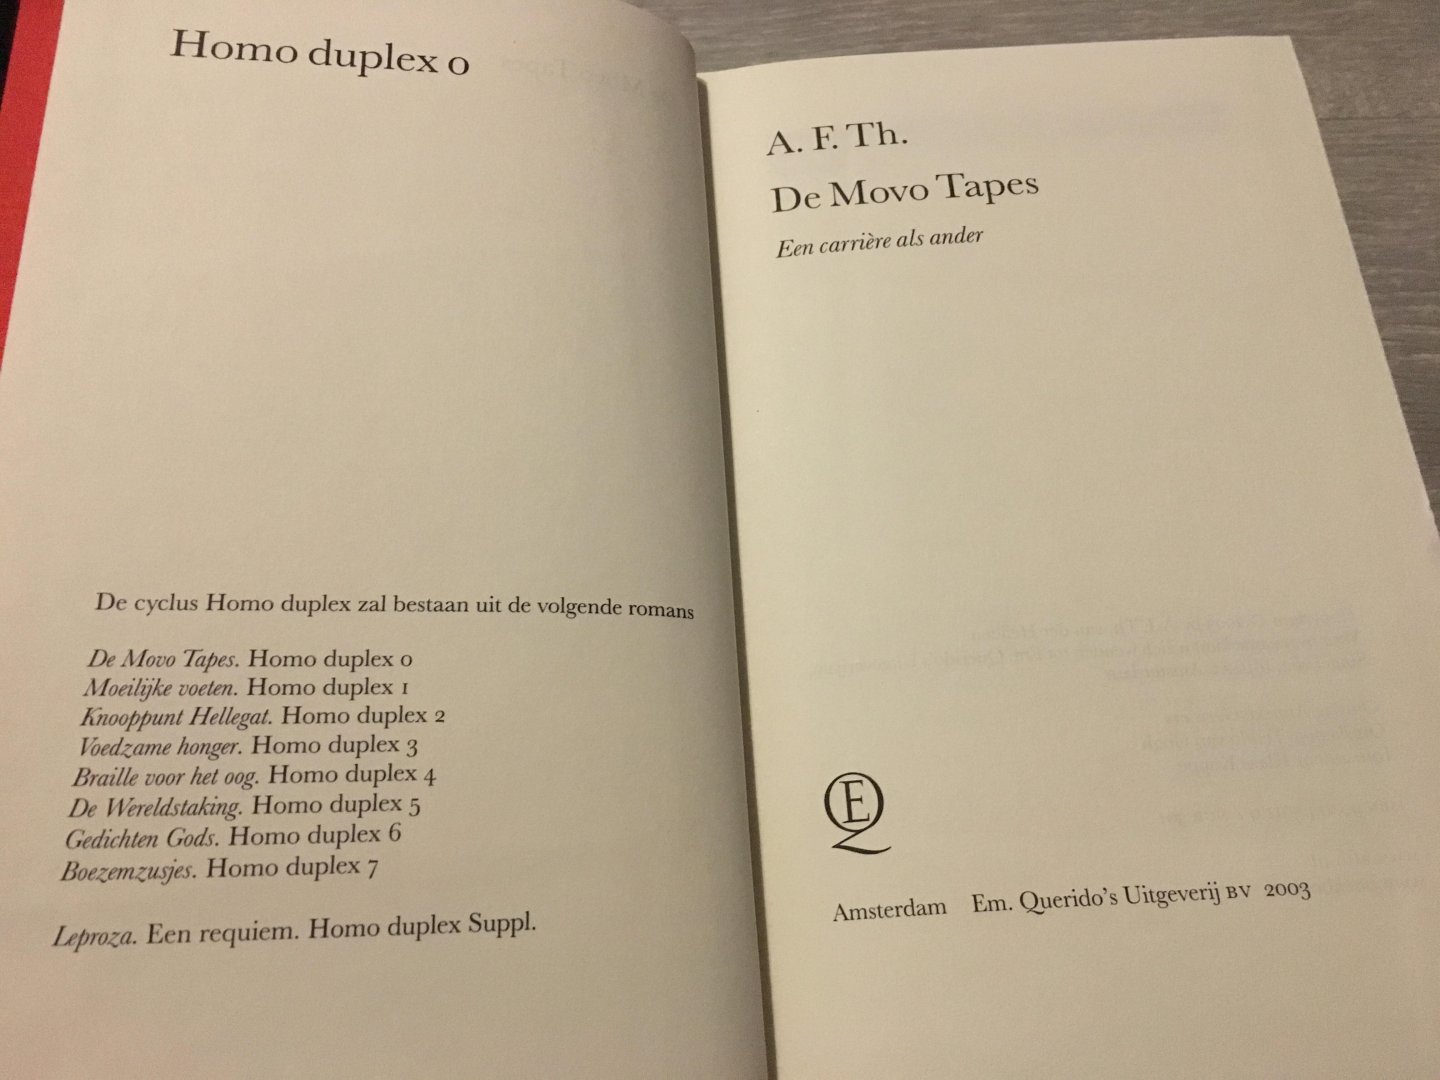 Heijden, A.F.Th. van der - Homo duplex, De Movo Tapes / een carriere als ander